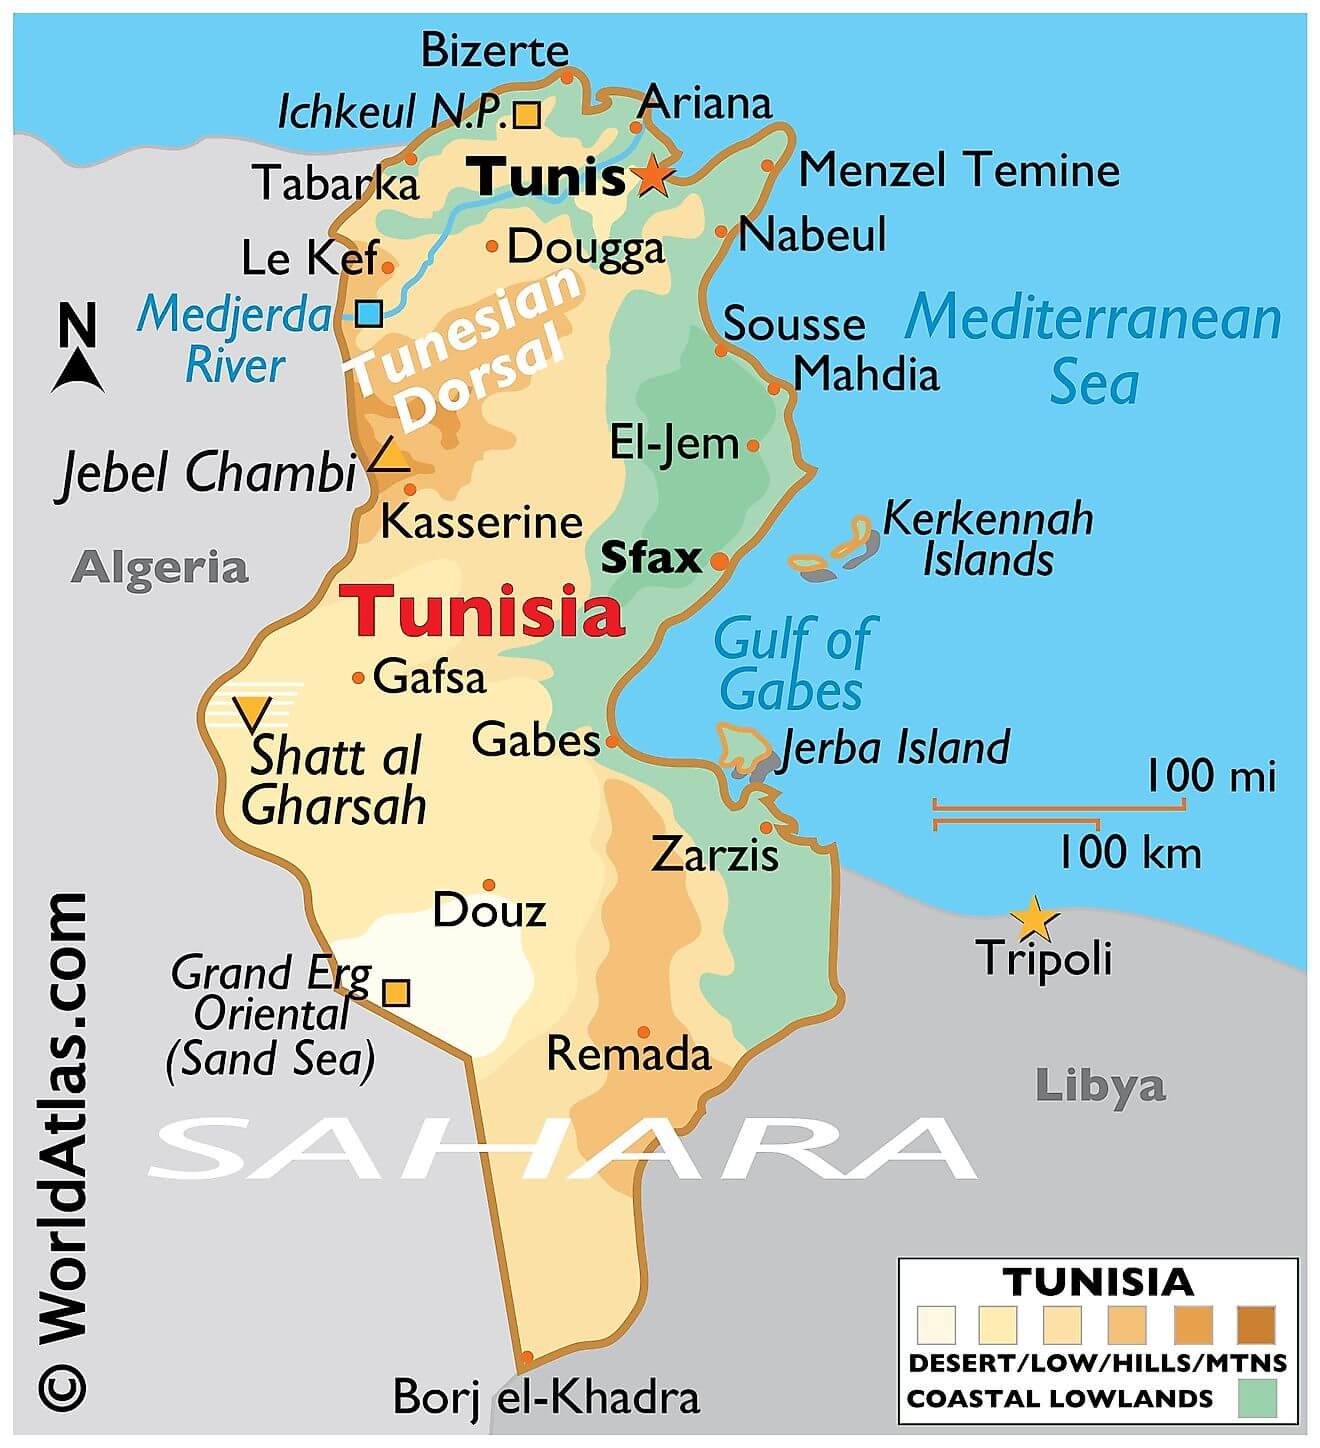 Bản đồ vật lý của Tunisia